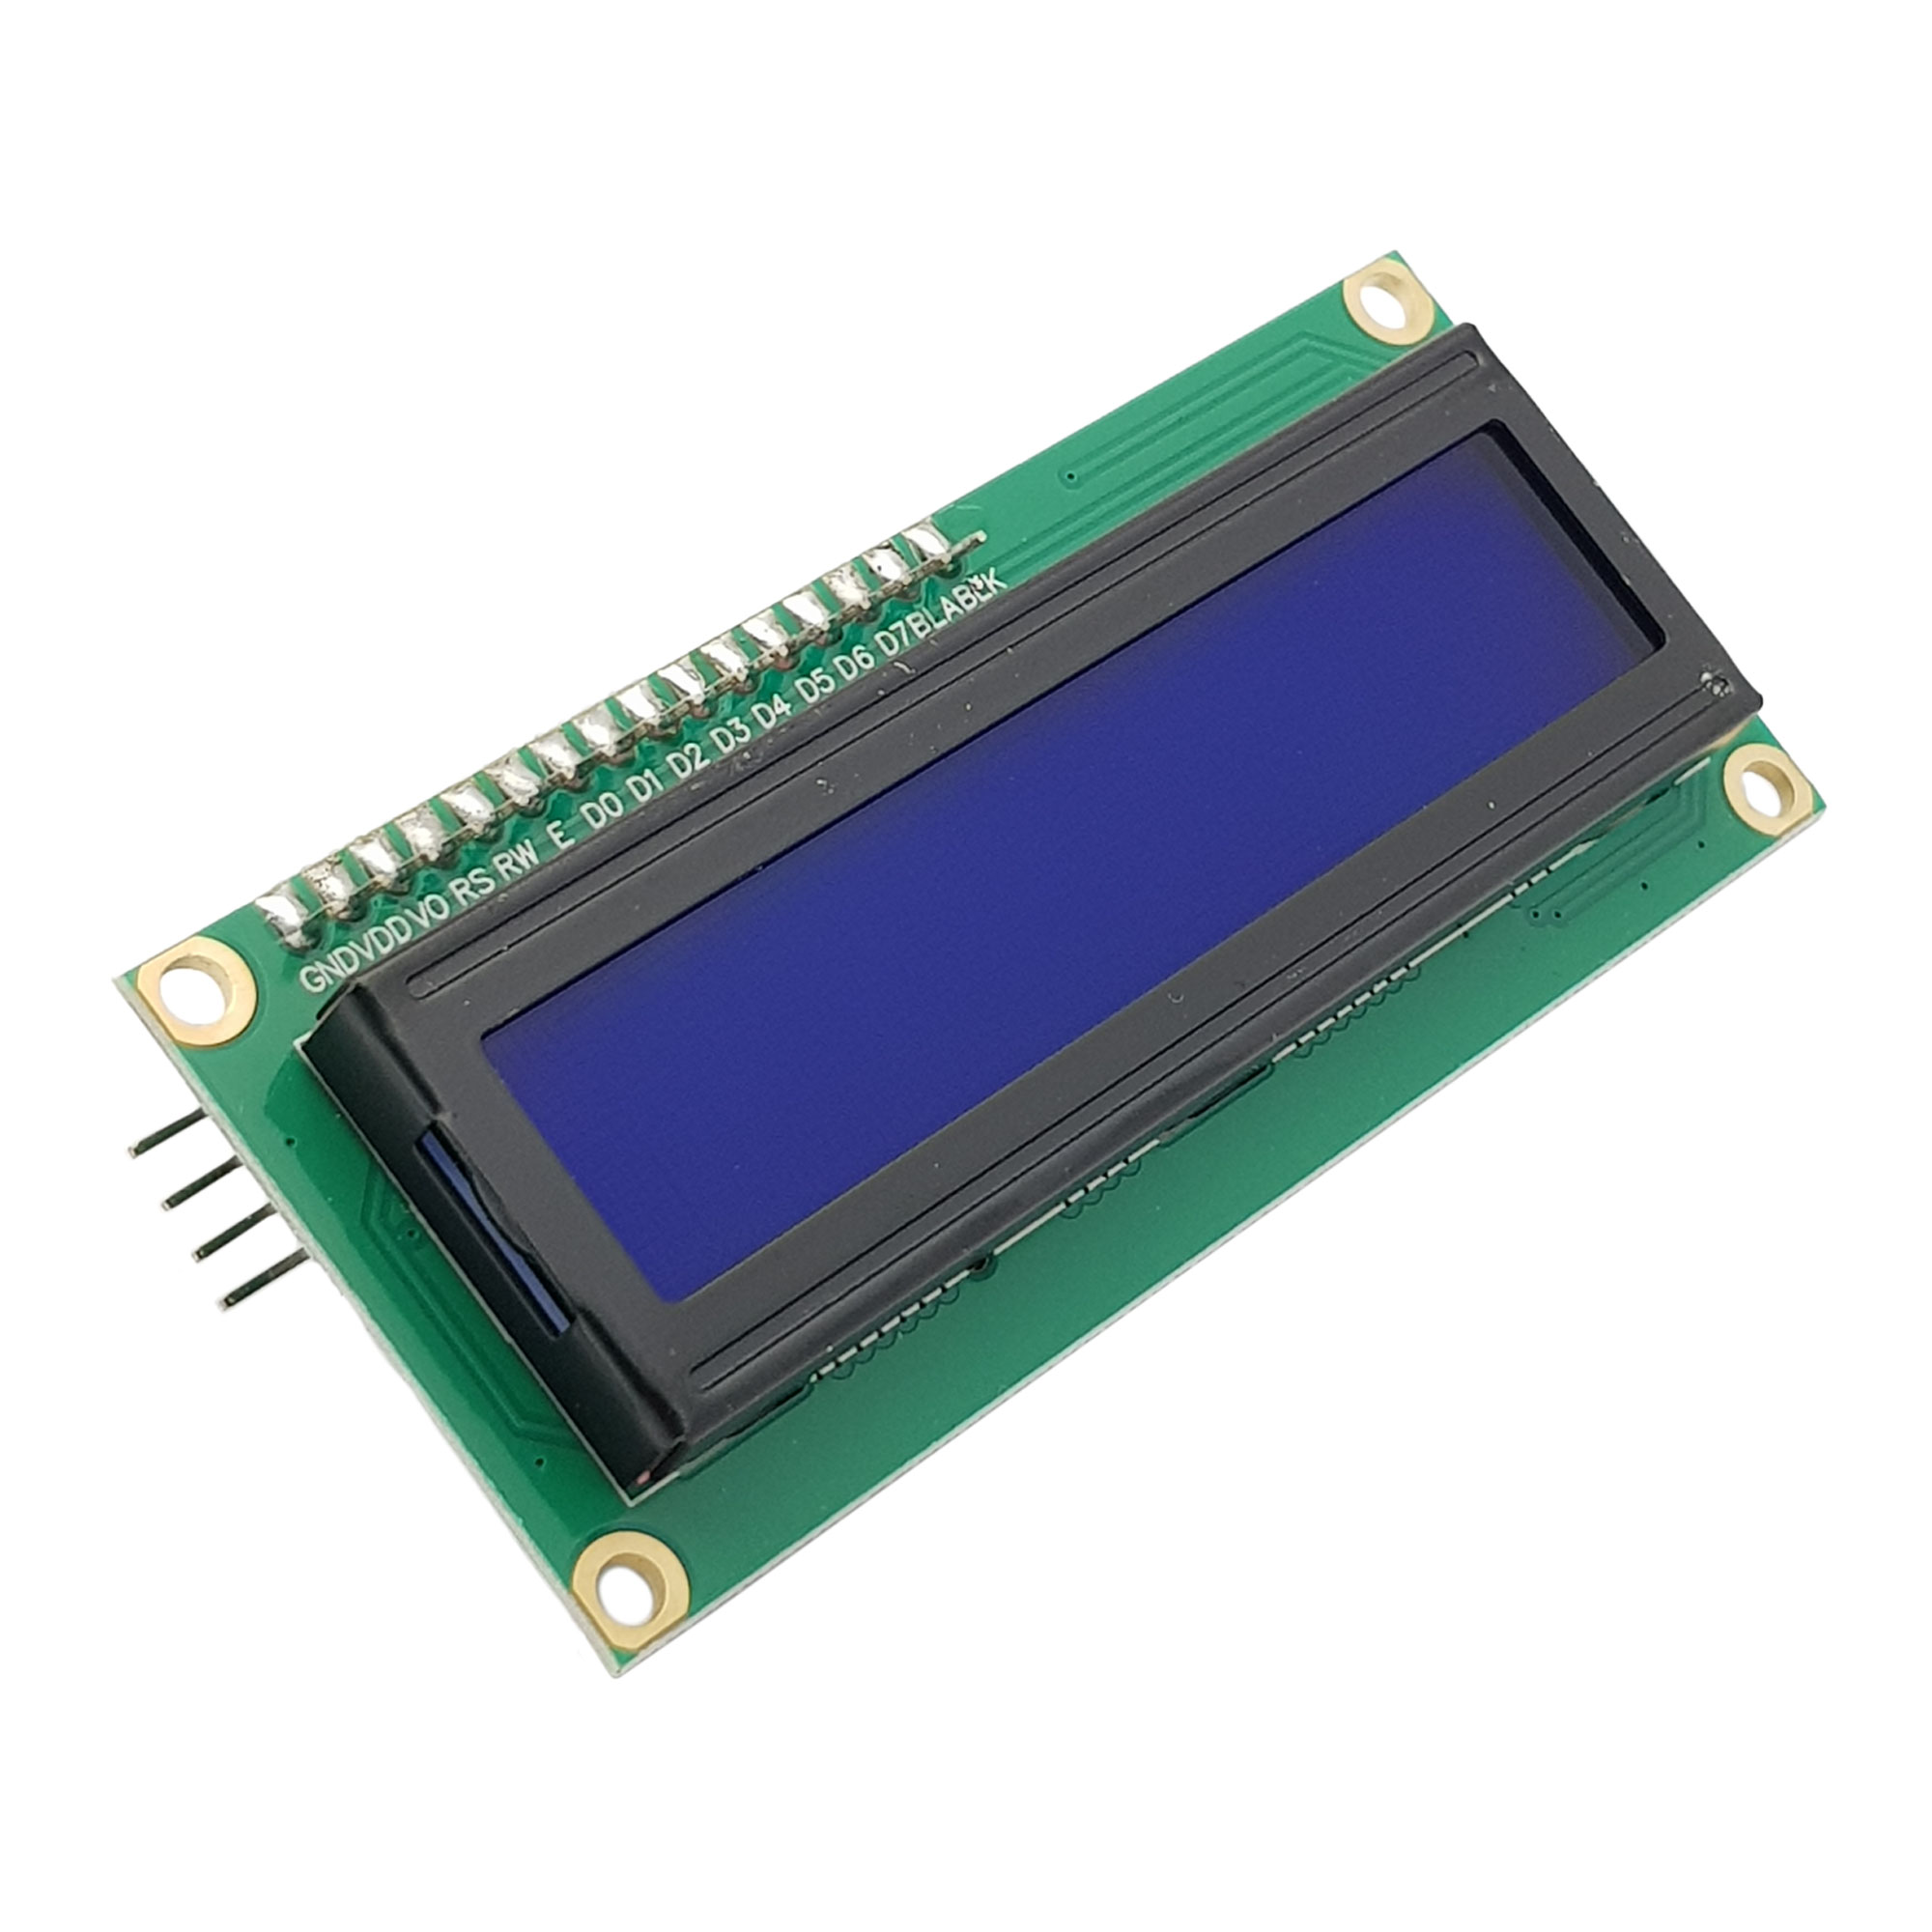 LCD 1602 kèm module I2C màu xanh dương